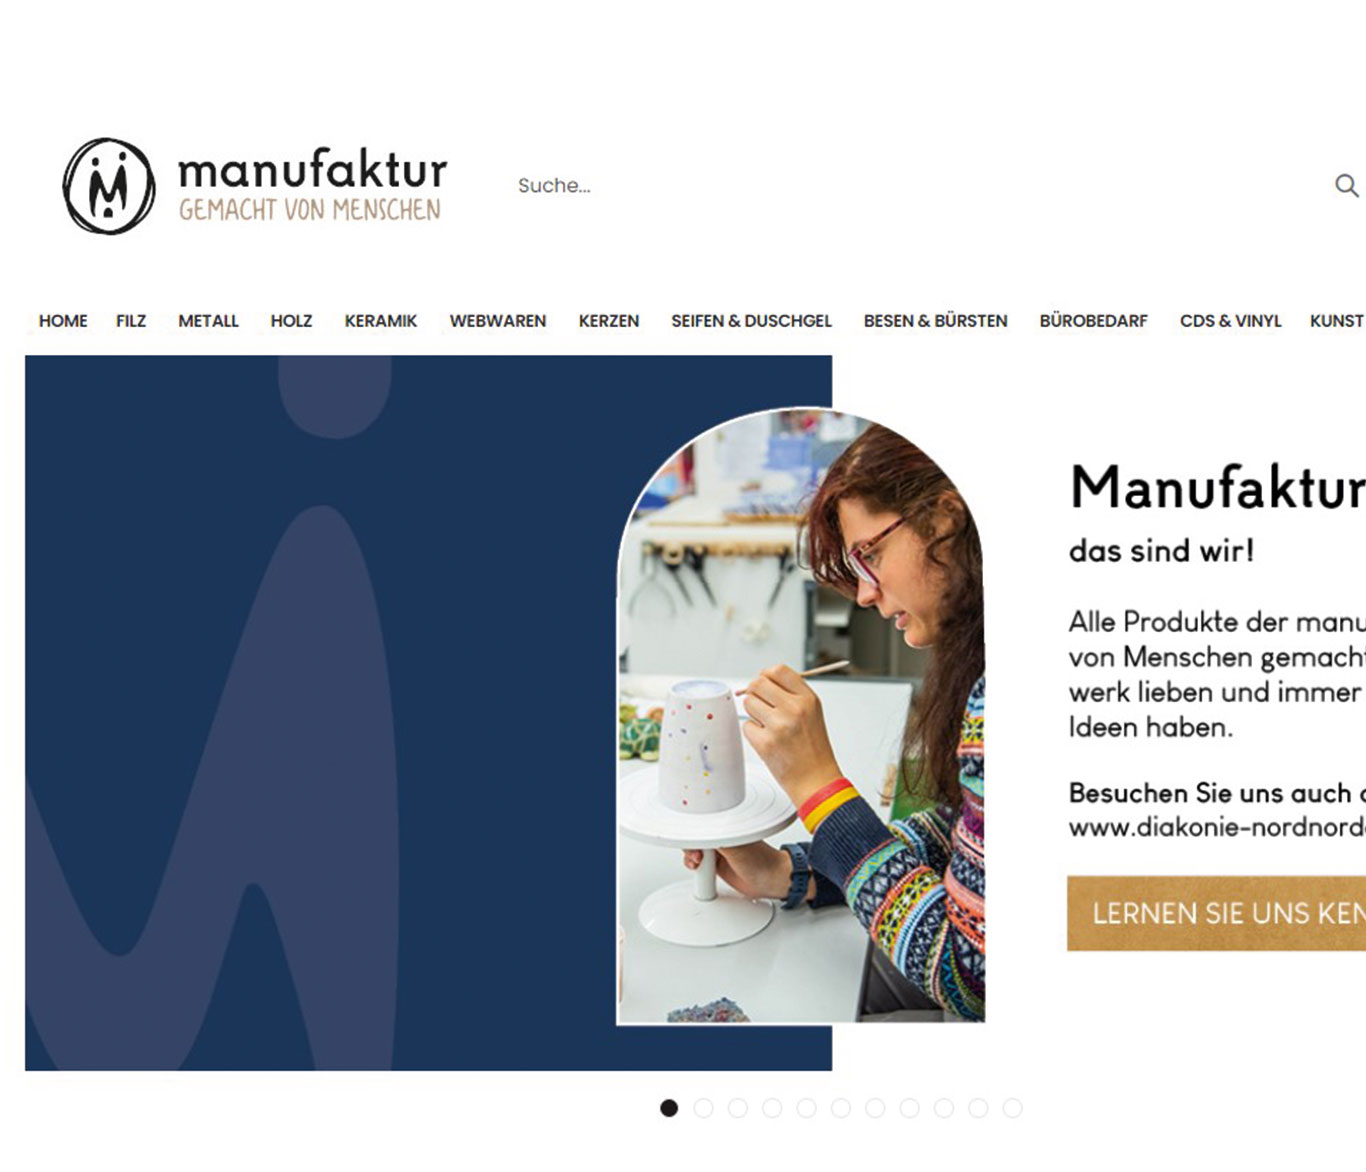 Die Startseite der Homepage manufaktur-luebeck.de